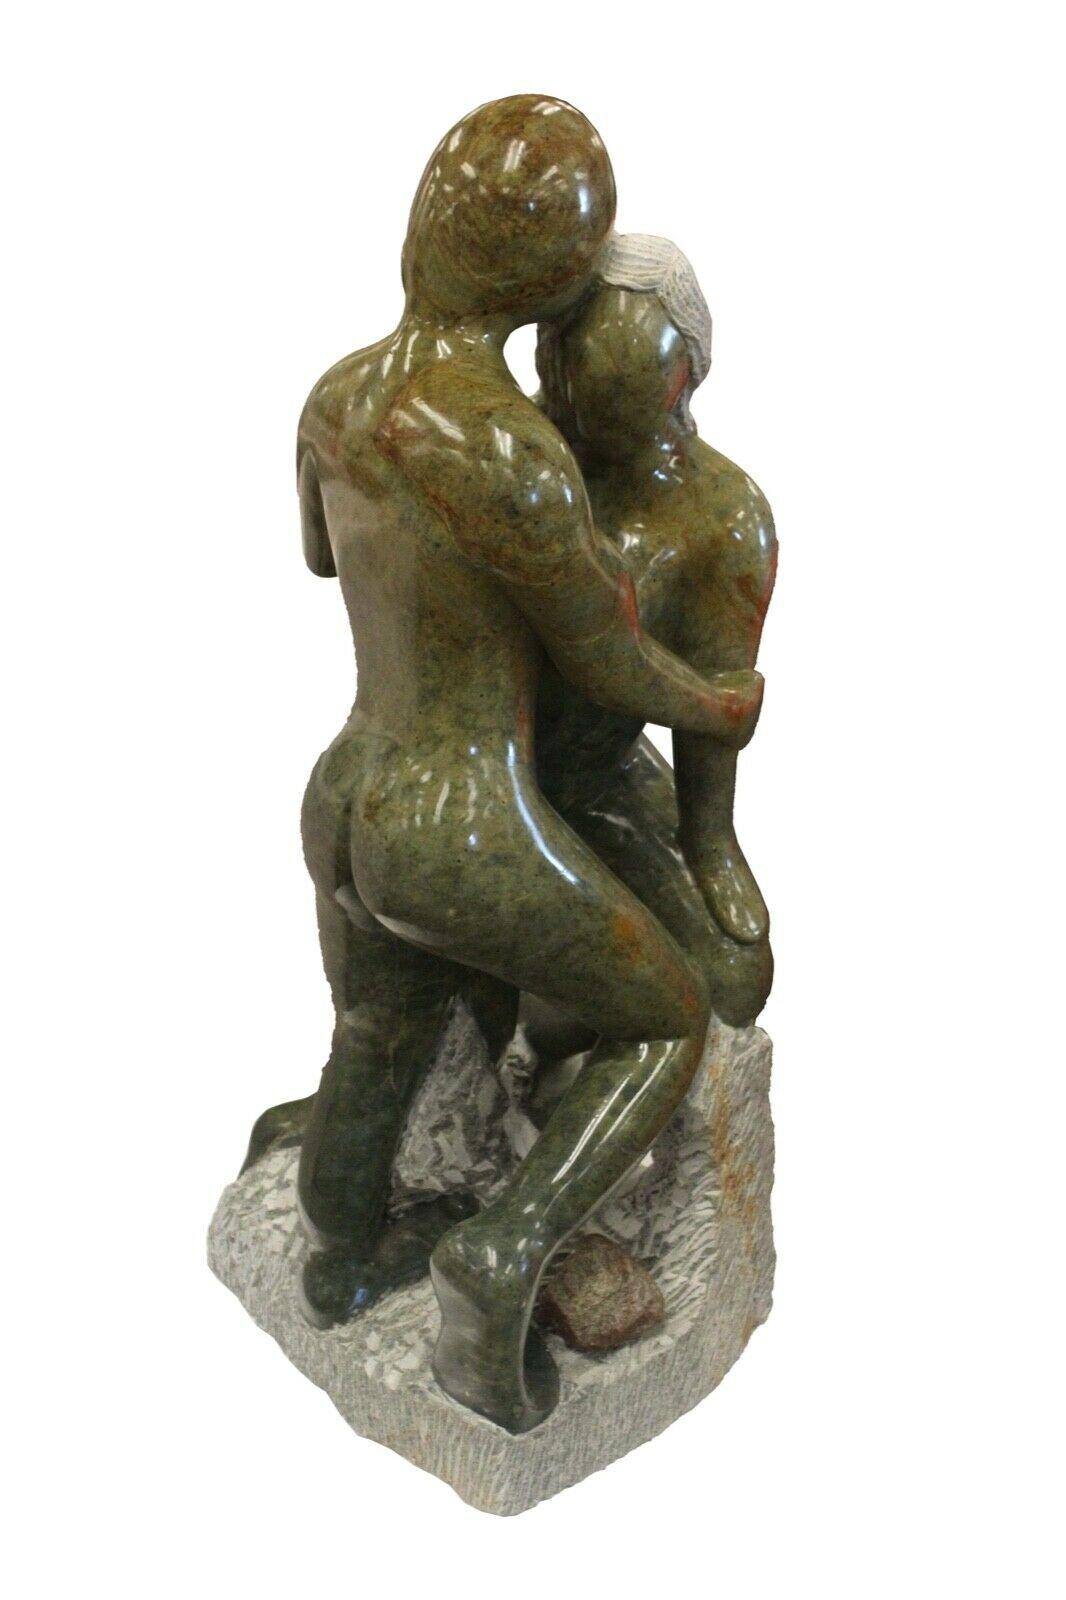 Incroyable et grande sculpture en pierre de savon représentant deux personnes s'embrassant. Artisanat d'artisanat de formation supérieure. Une excellente utilisation des pierres
 La coloration naturelle donne une touche finale à l'esthétique